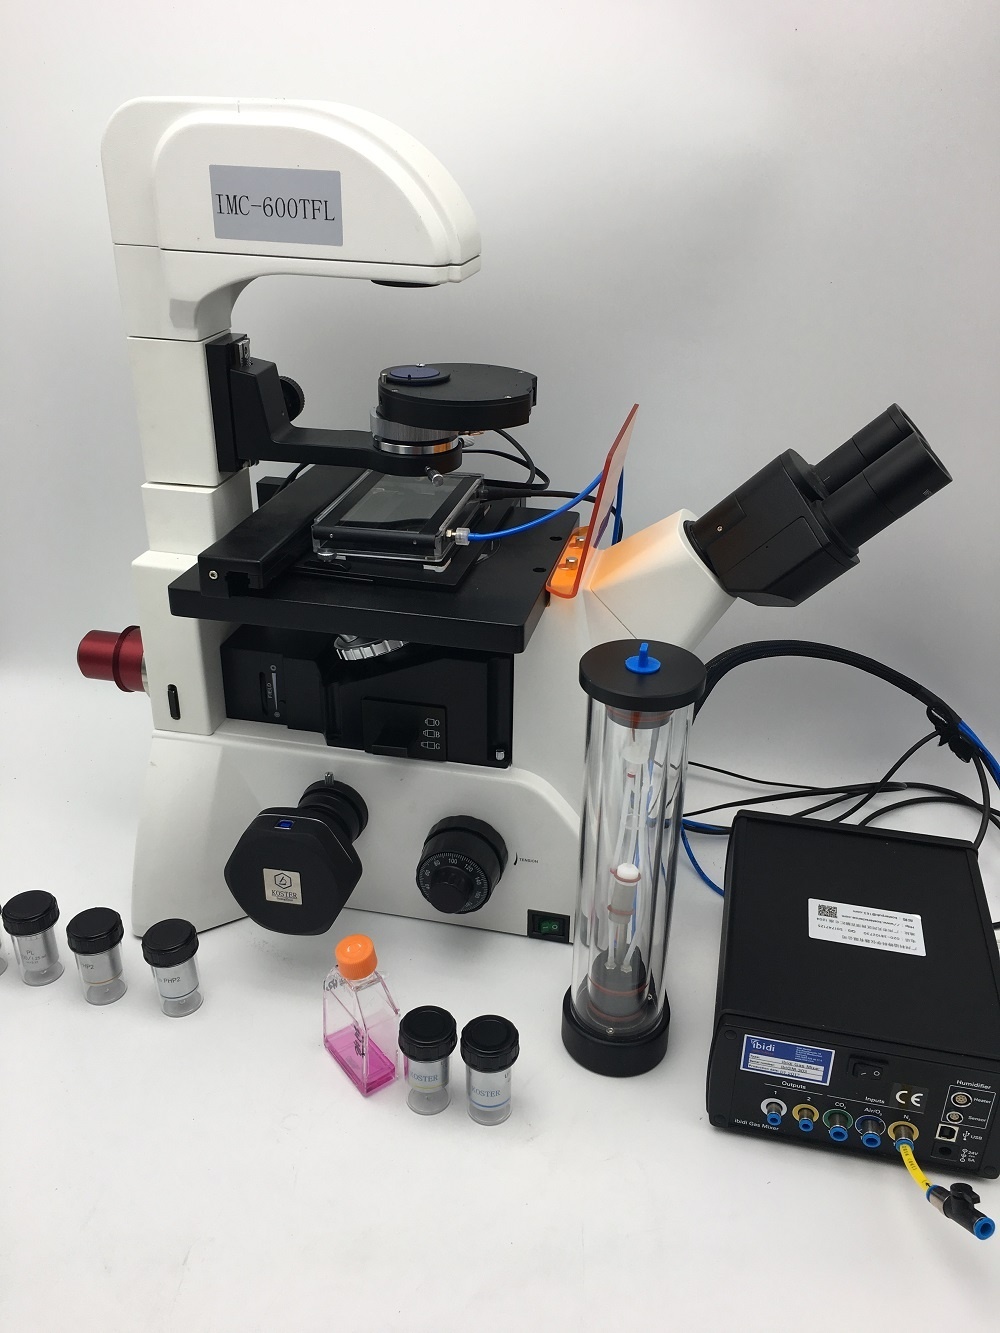 活细胞倒置荧光显微镜KOSTER IMC 600-TFL的图片